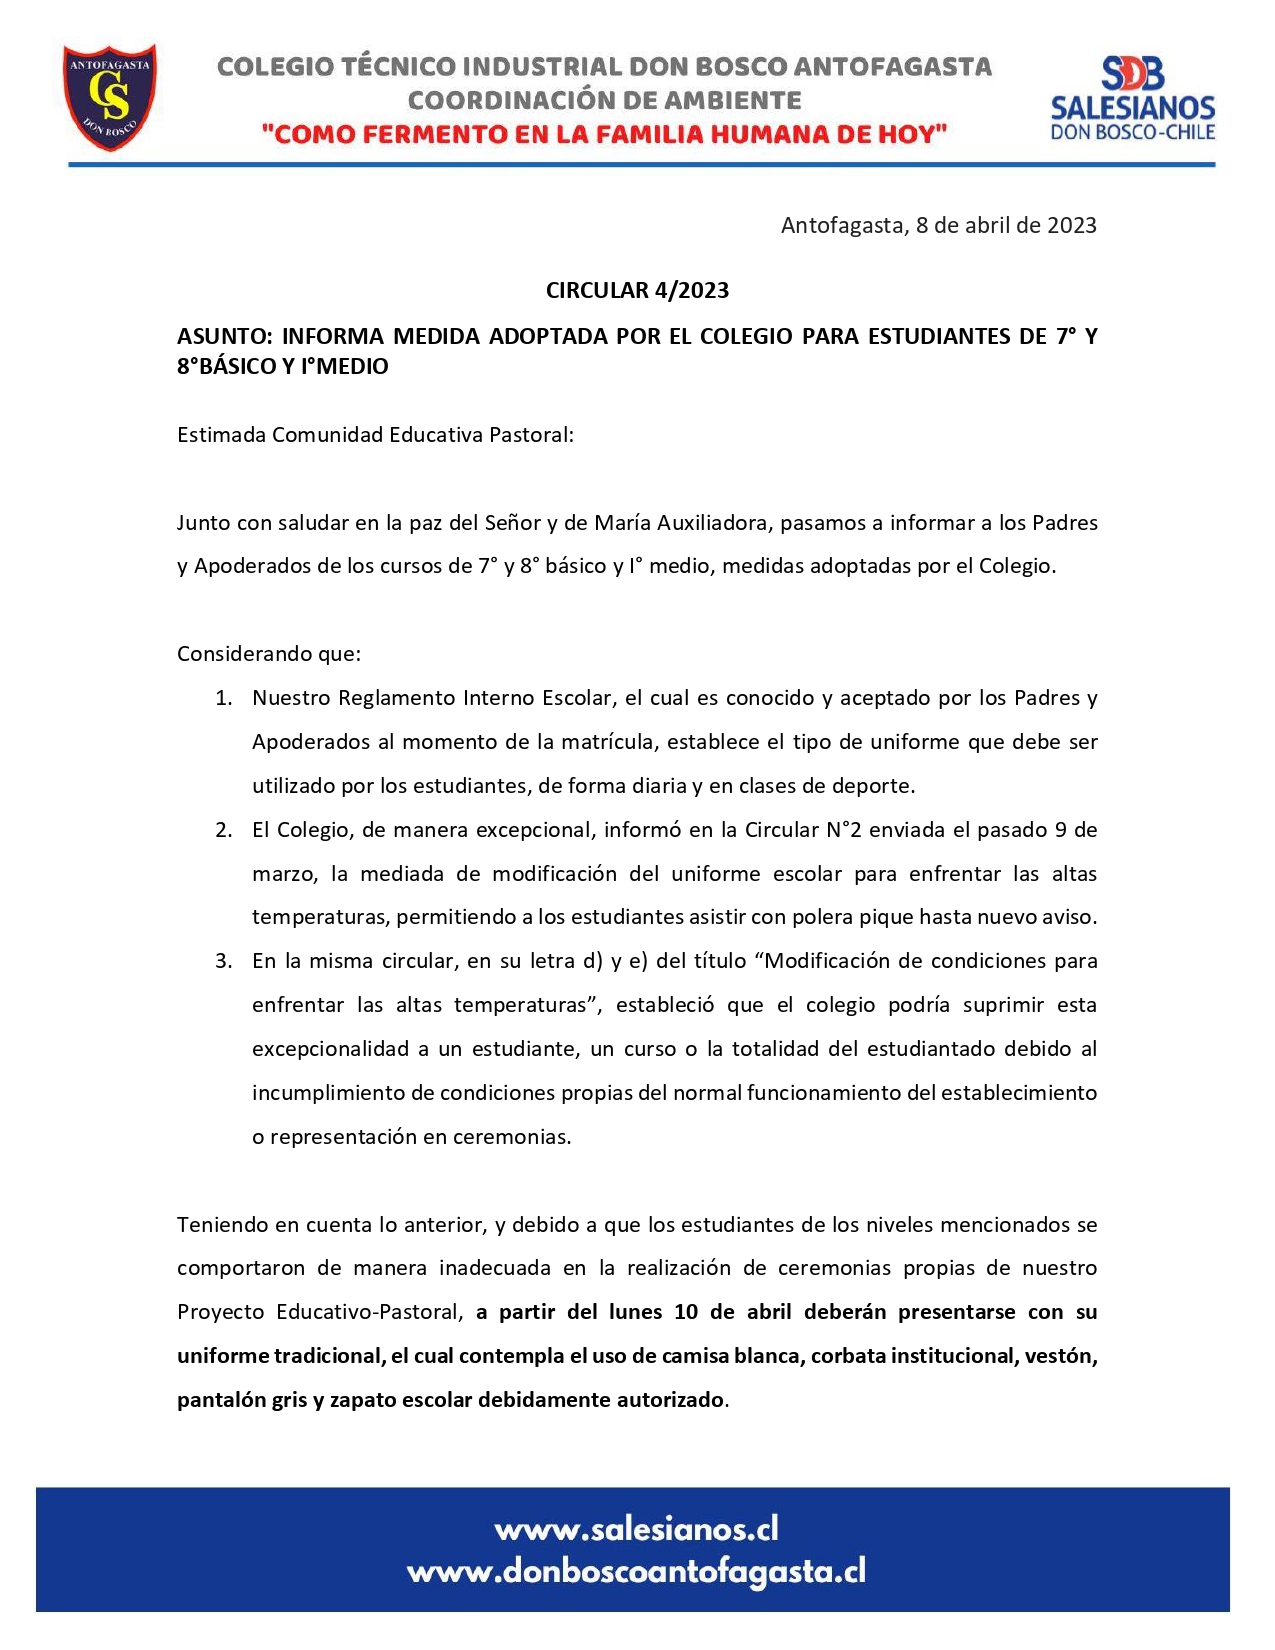 CIRCULAR N4 INFORMA MEDIDA ADOPTADA POR EL COLEGIO PARA ESTUDIANTES DE 7 Y 8BÁSICO Y IMEDIO page 0001